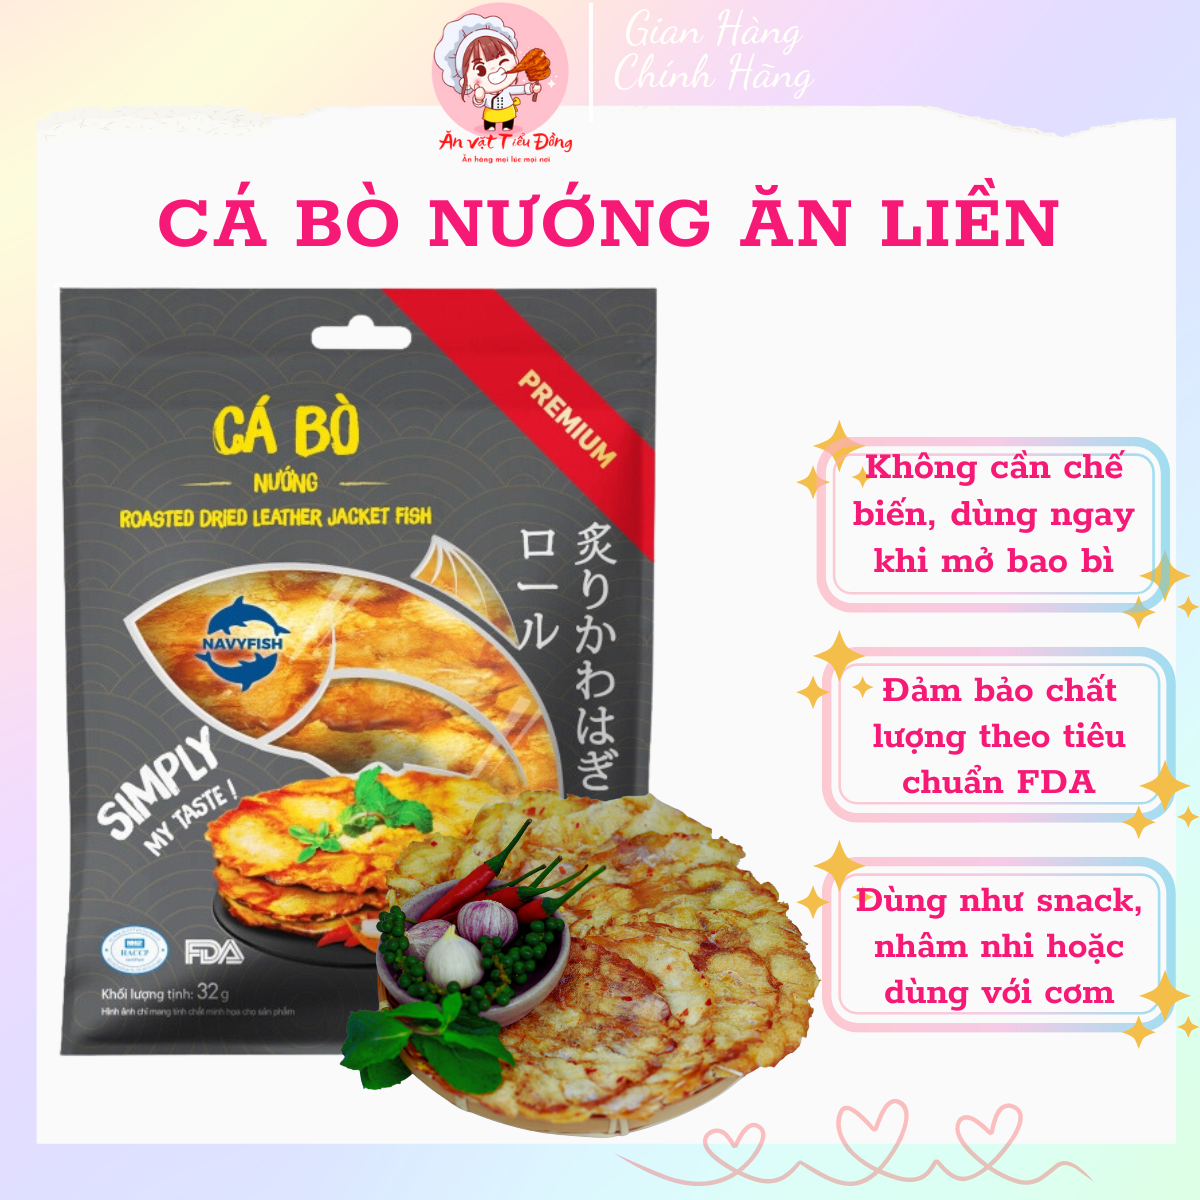 Snack Khô Cá Bò Nướng tẩm vị ăn liền - Ăn vặt Tam Tiểu Đồng